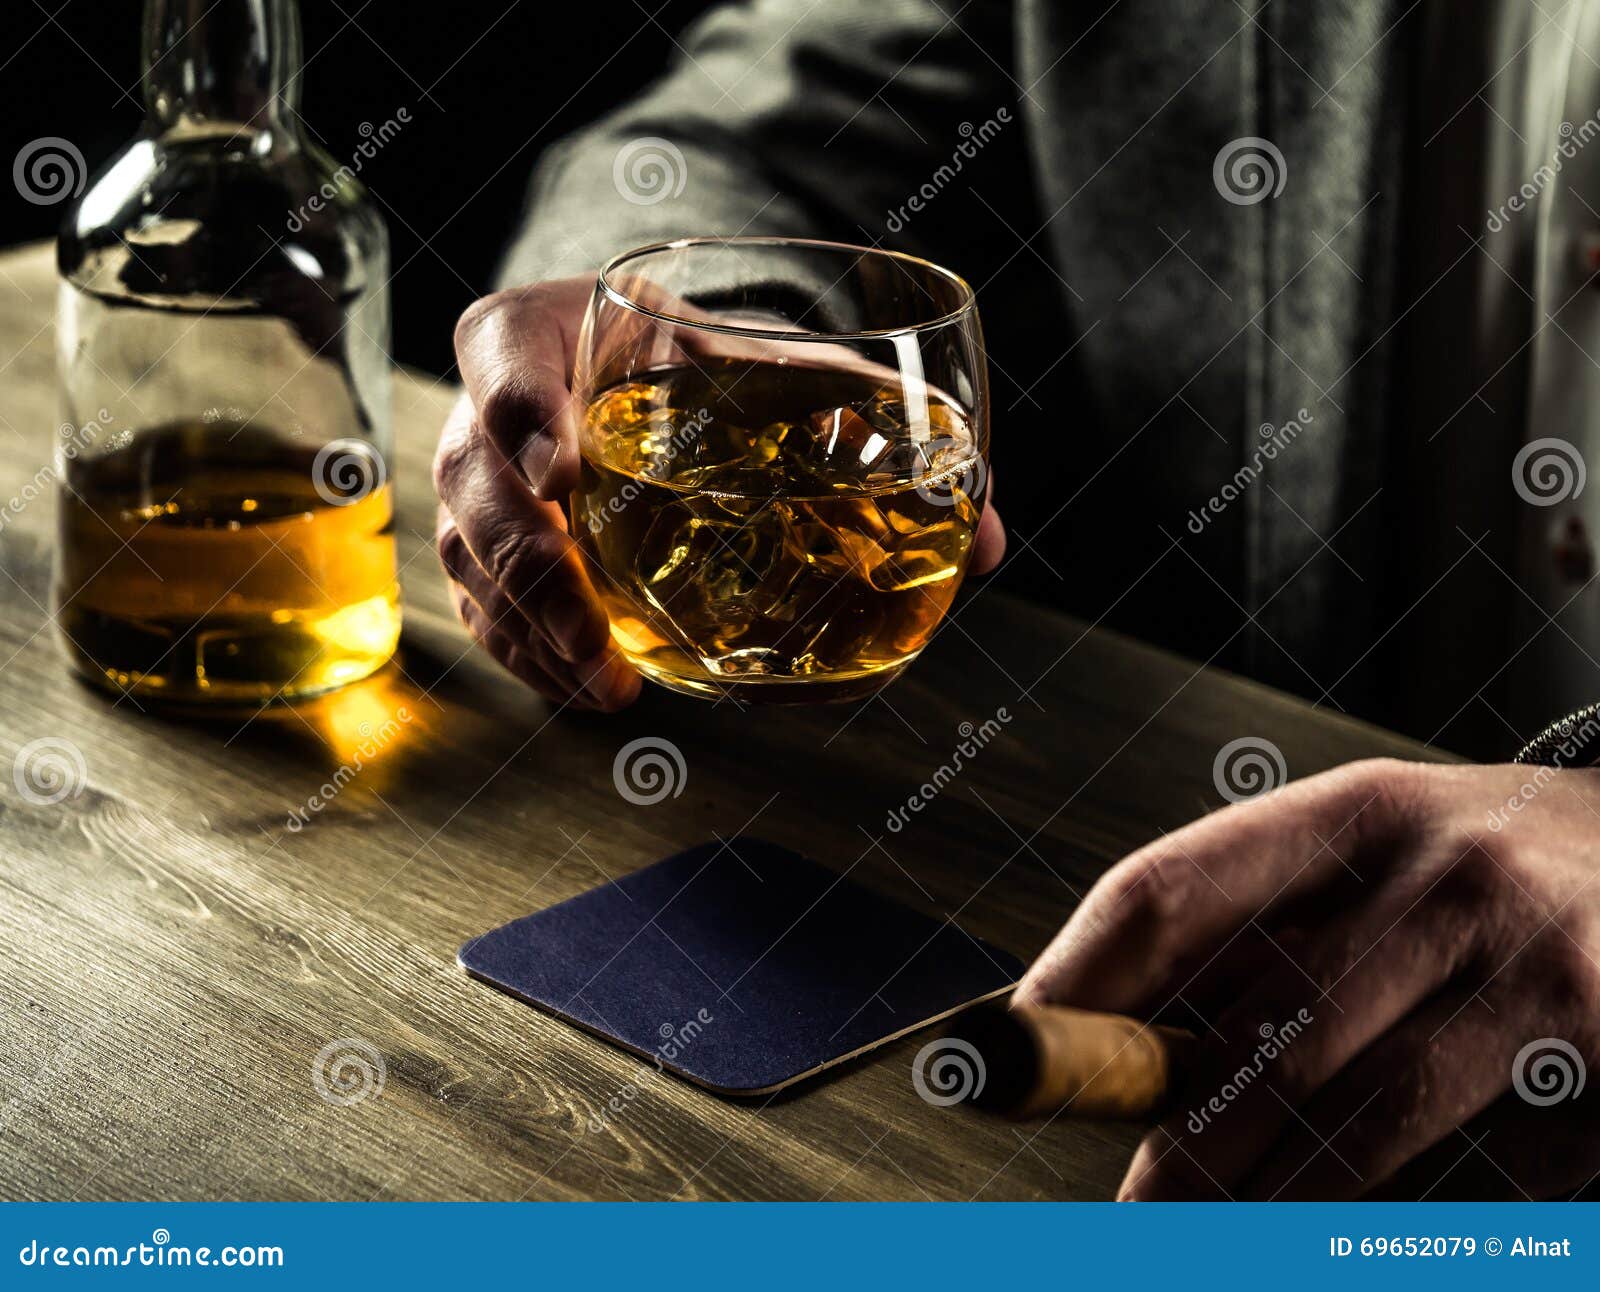 Песни сегодня я пью виски. Мужчина пьет виски. Виски с мужиком. Парень пьющий виски. Виски пью ночью.